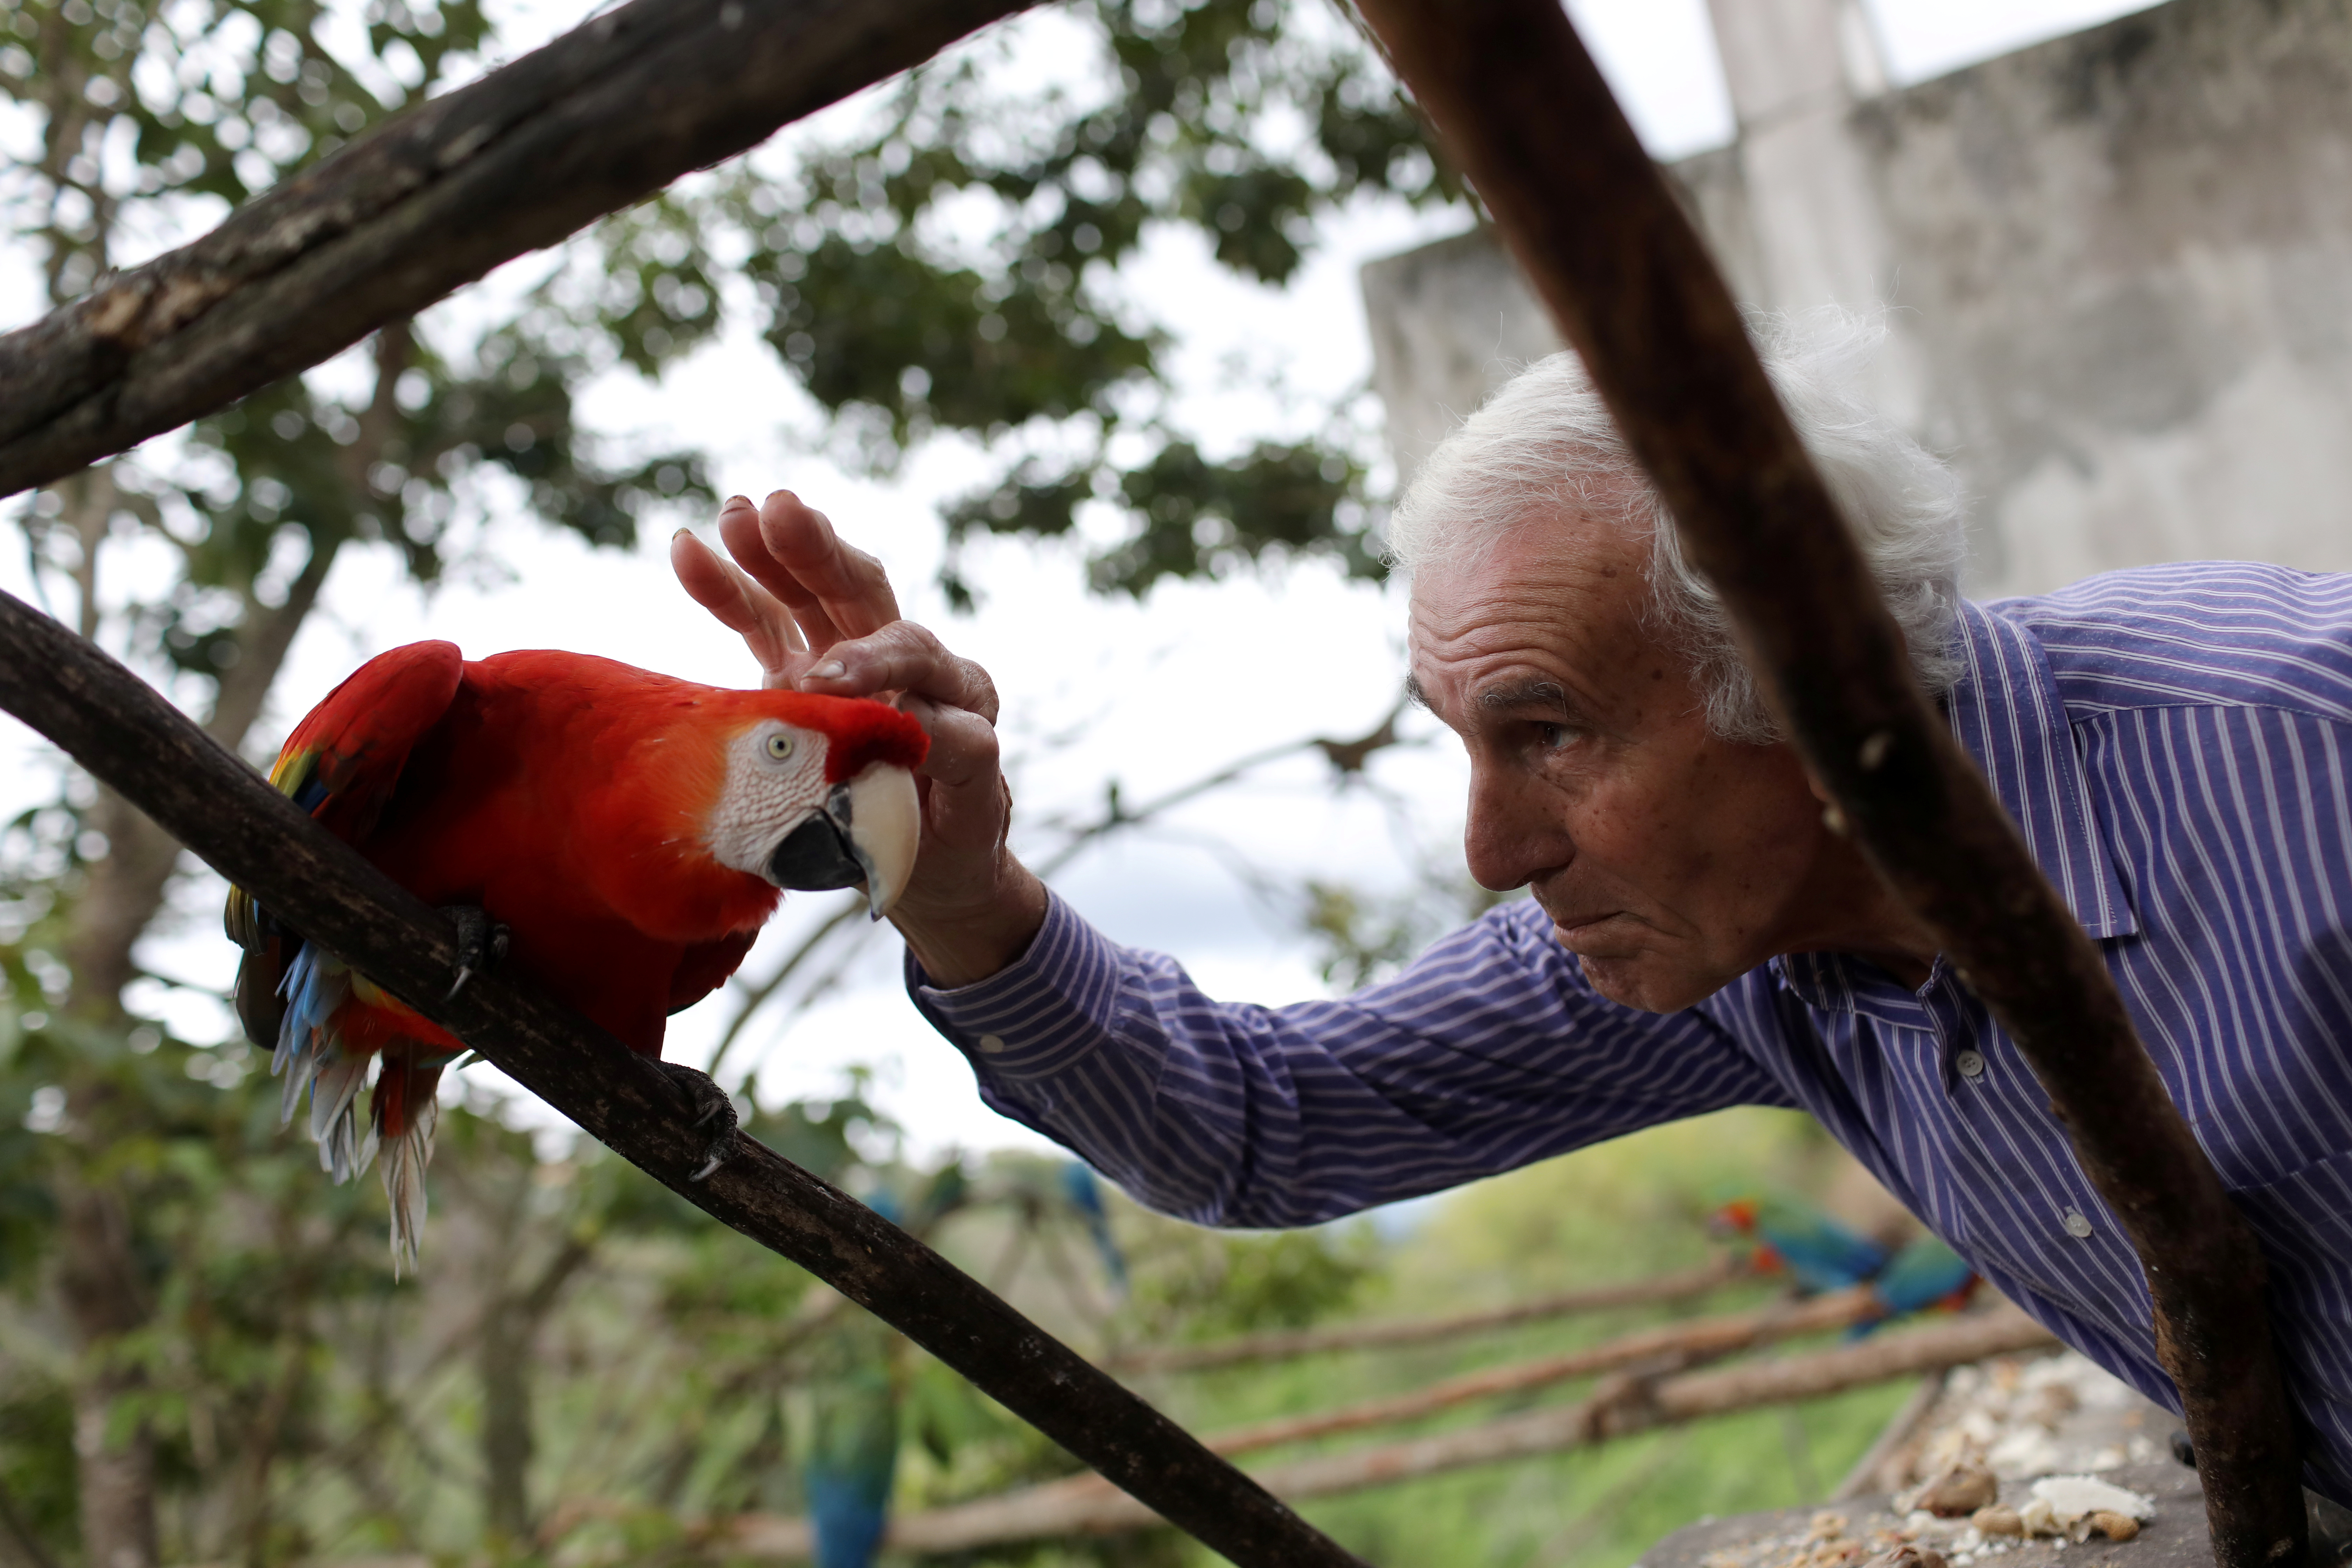 Las guacamayas en Caracas son las terapeutas naturales en medio de la crisis (Fotos)